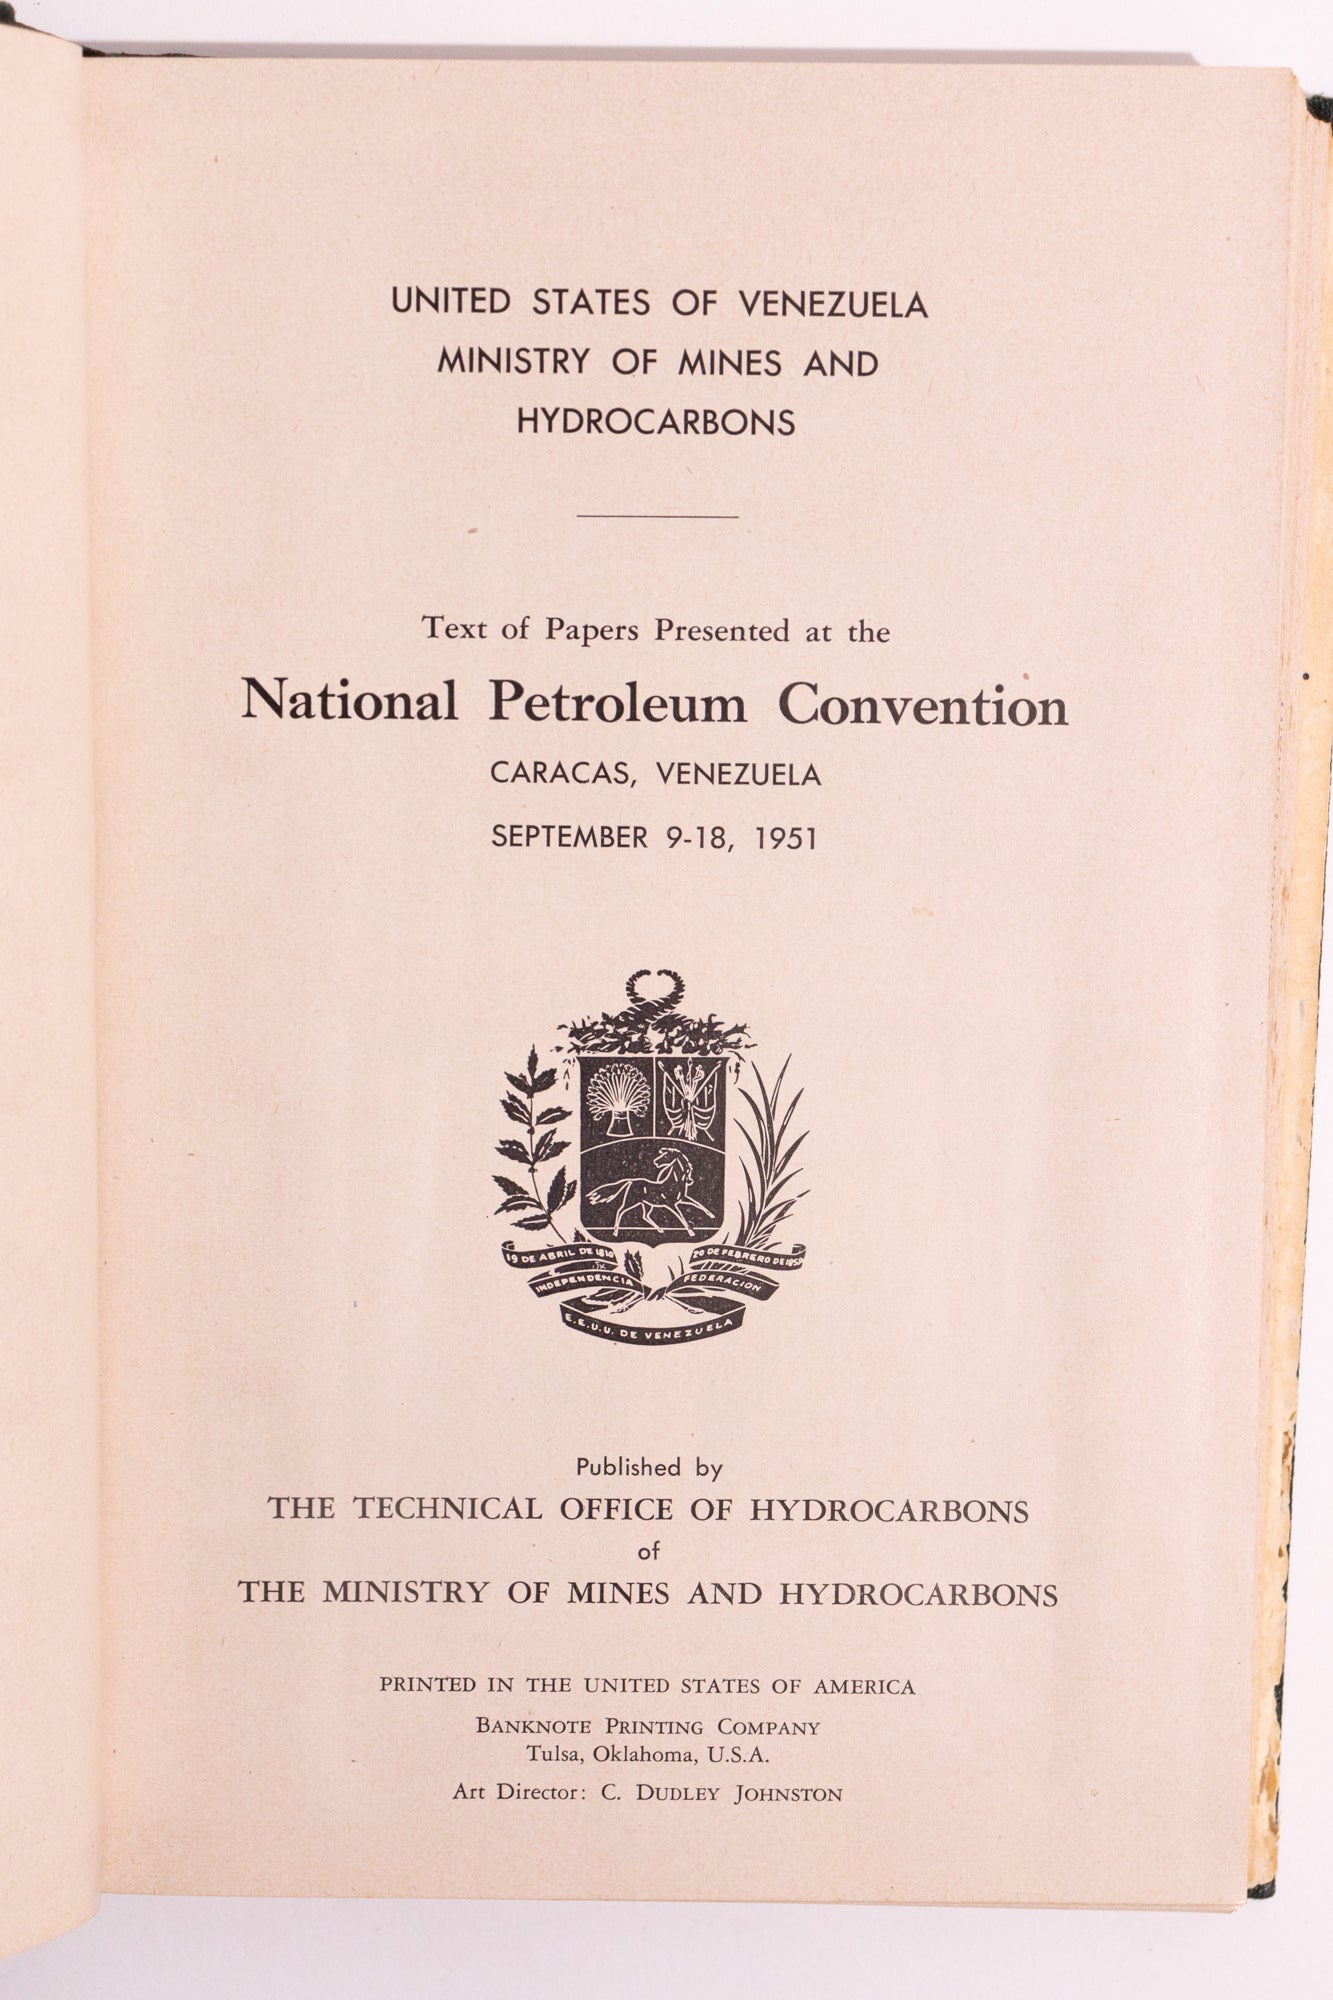 National Petroleum Convention: Caracas, Venezuela - Sep 9-18, 1951